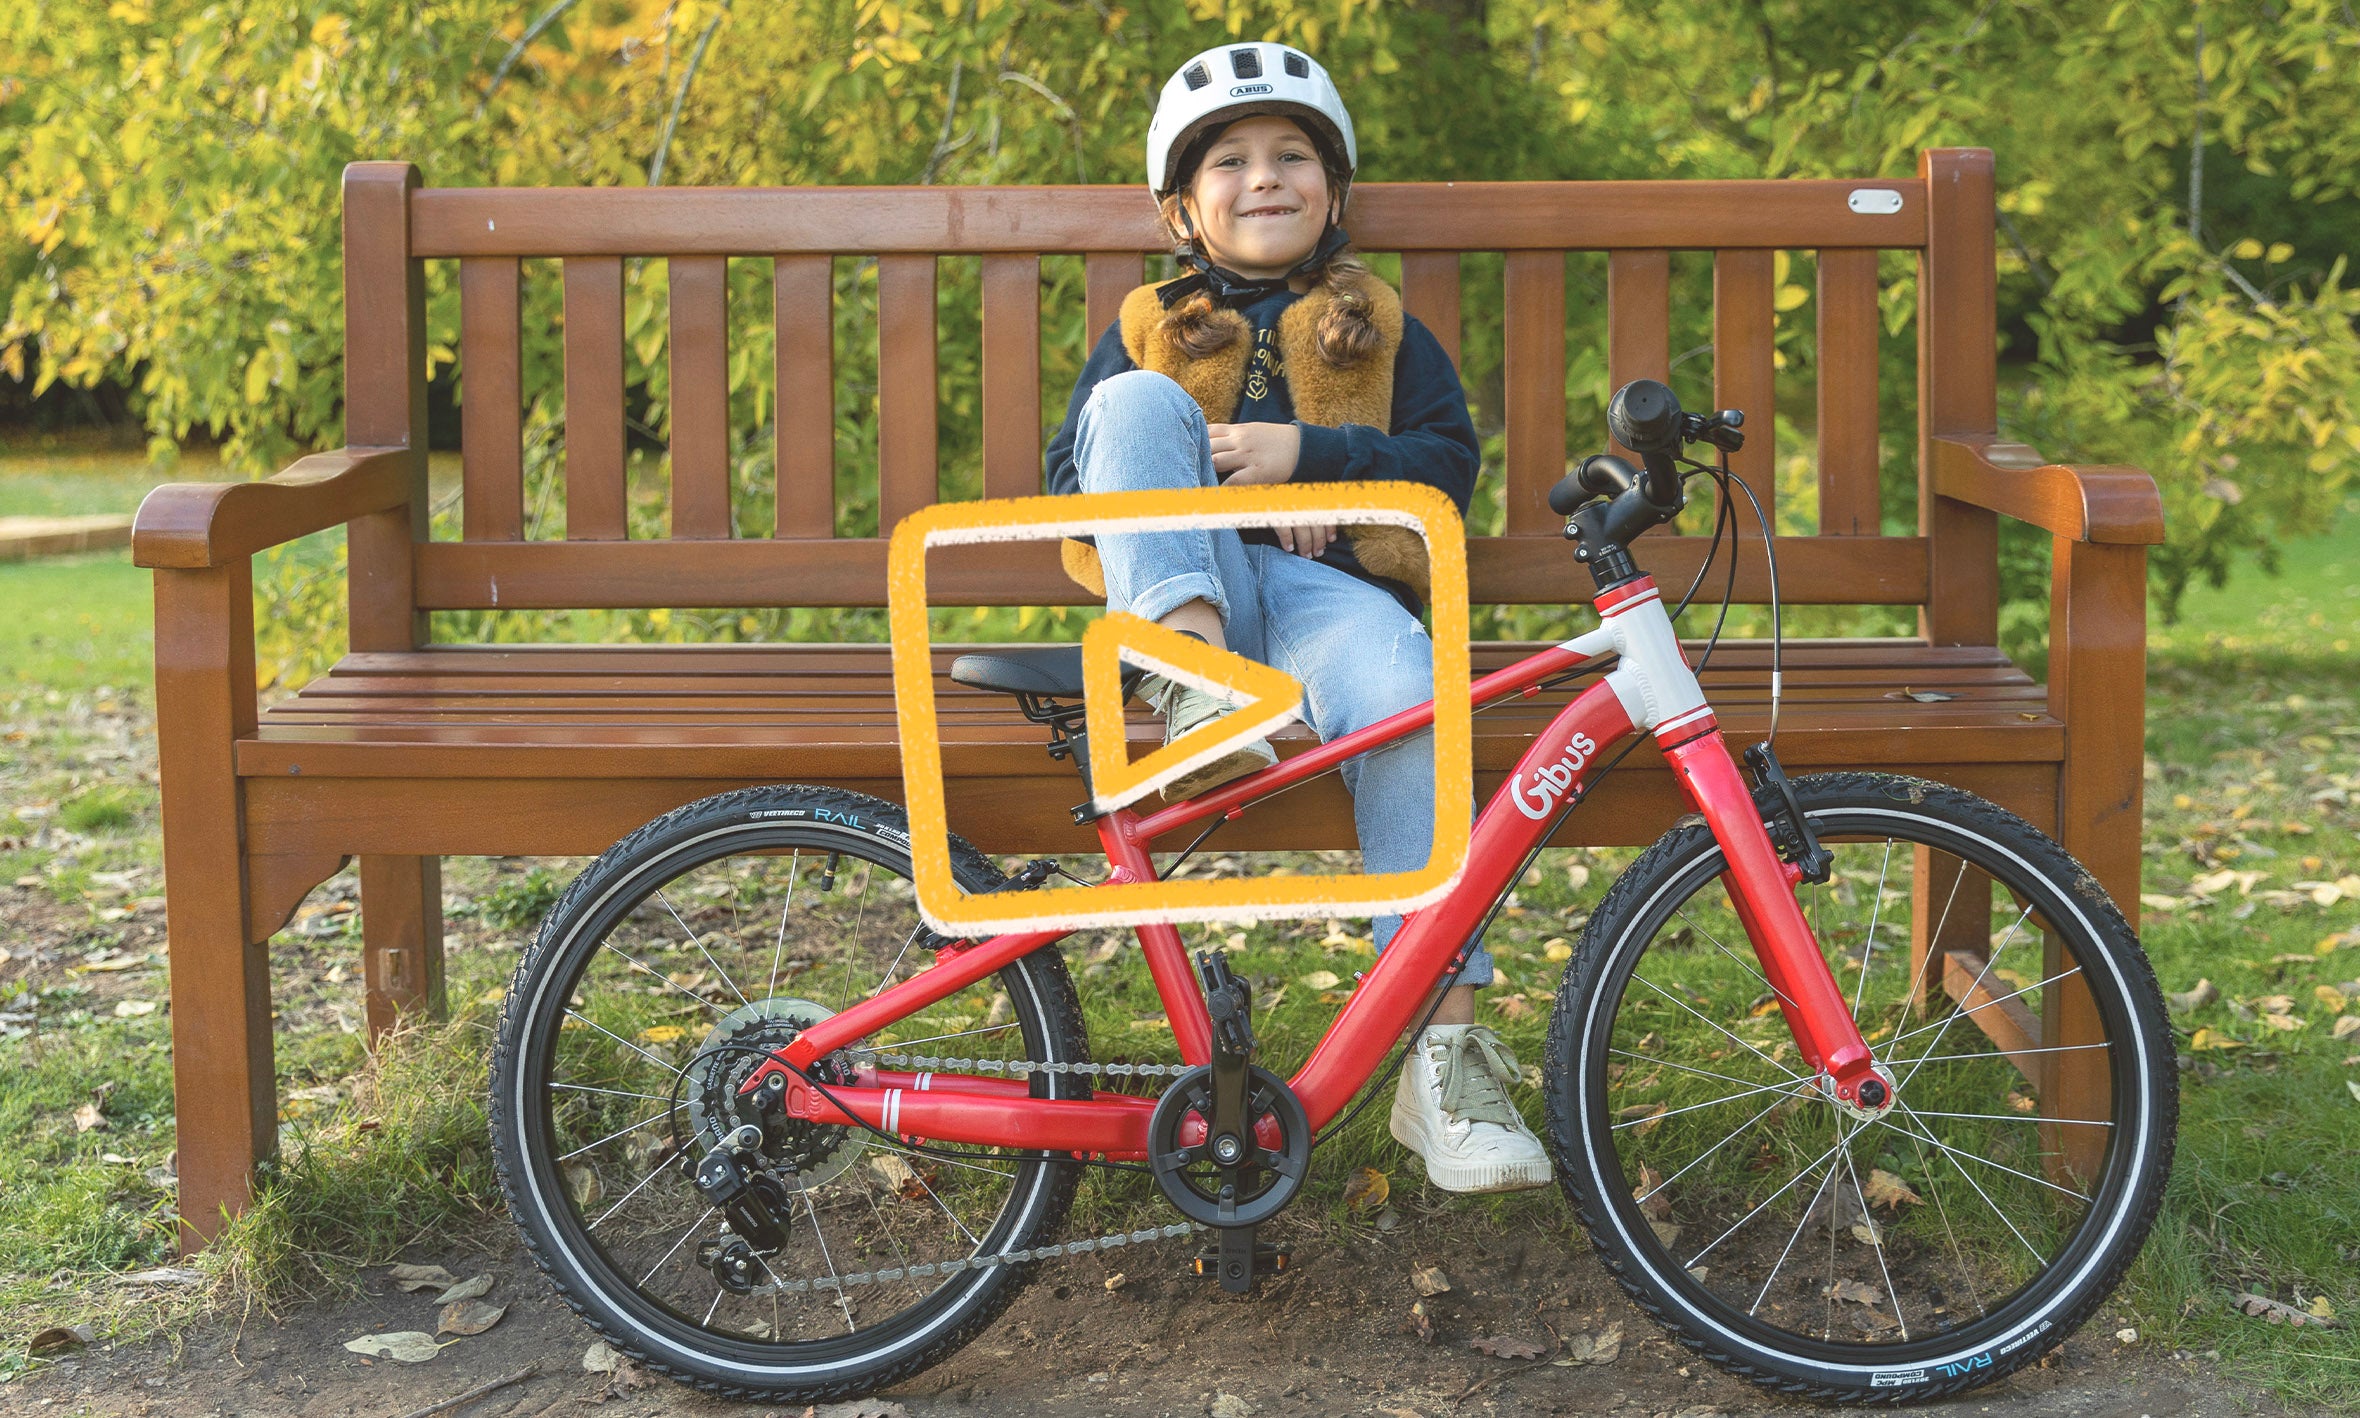 vélo 20 pouces rouge Gibus Cycles et enfant souriant assis